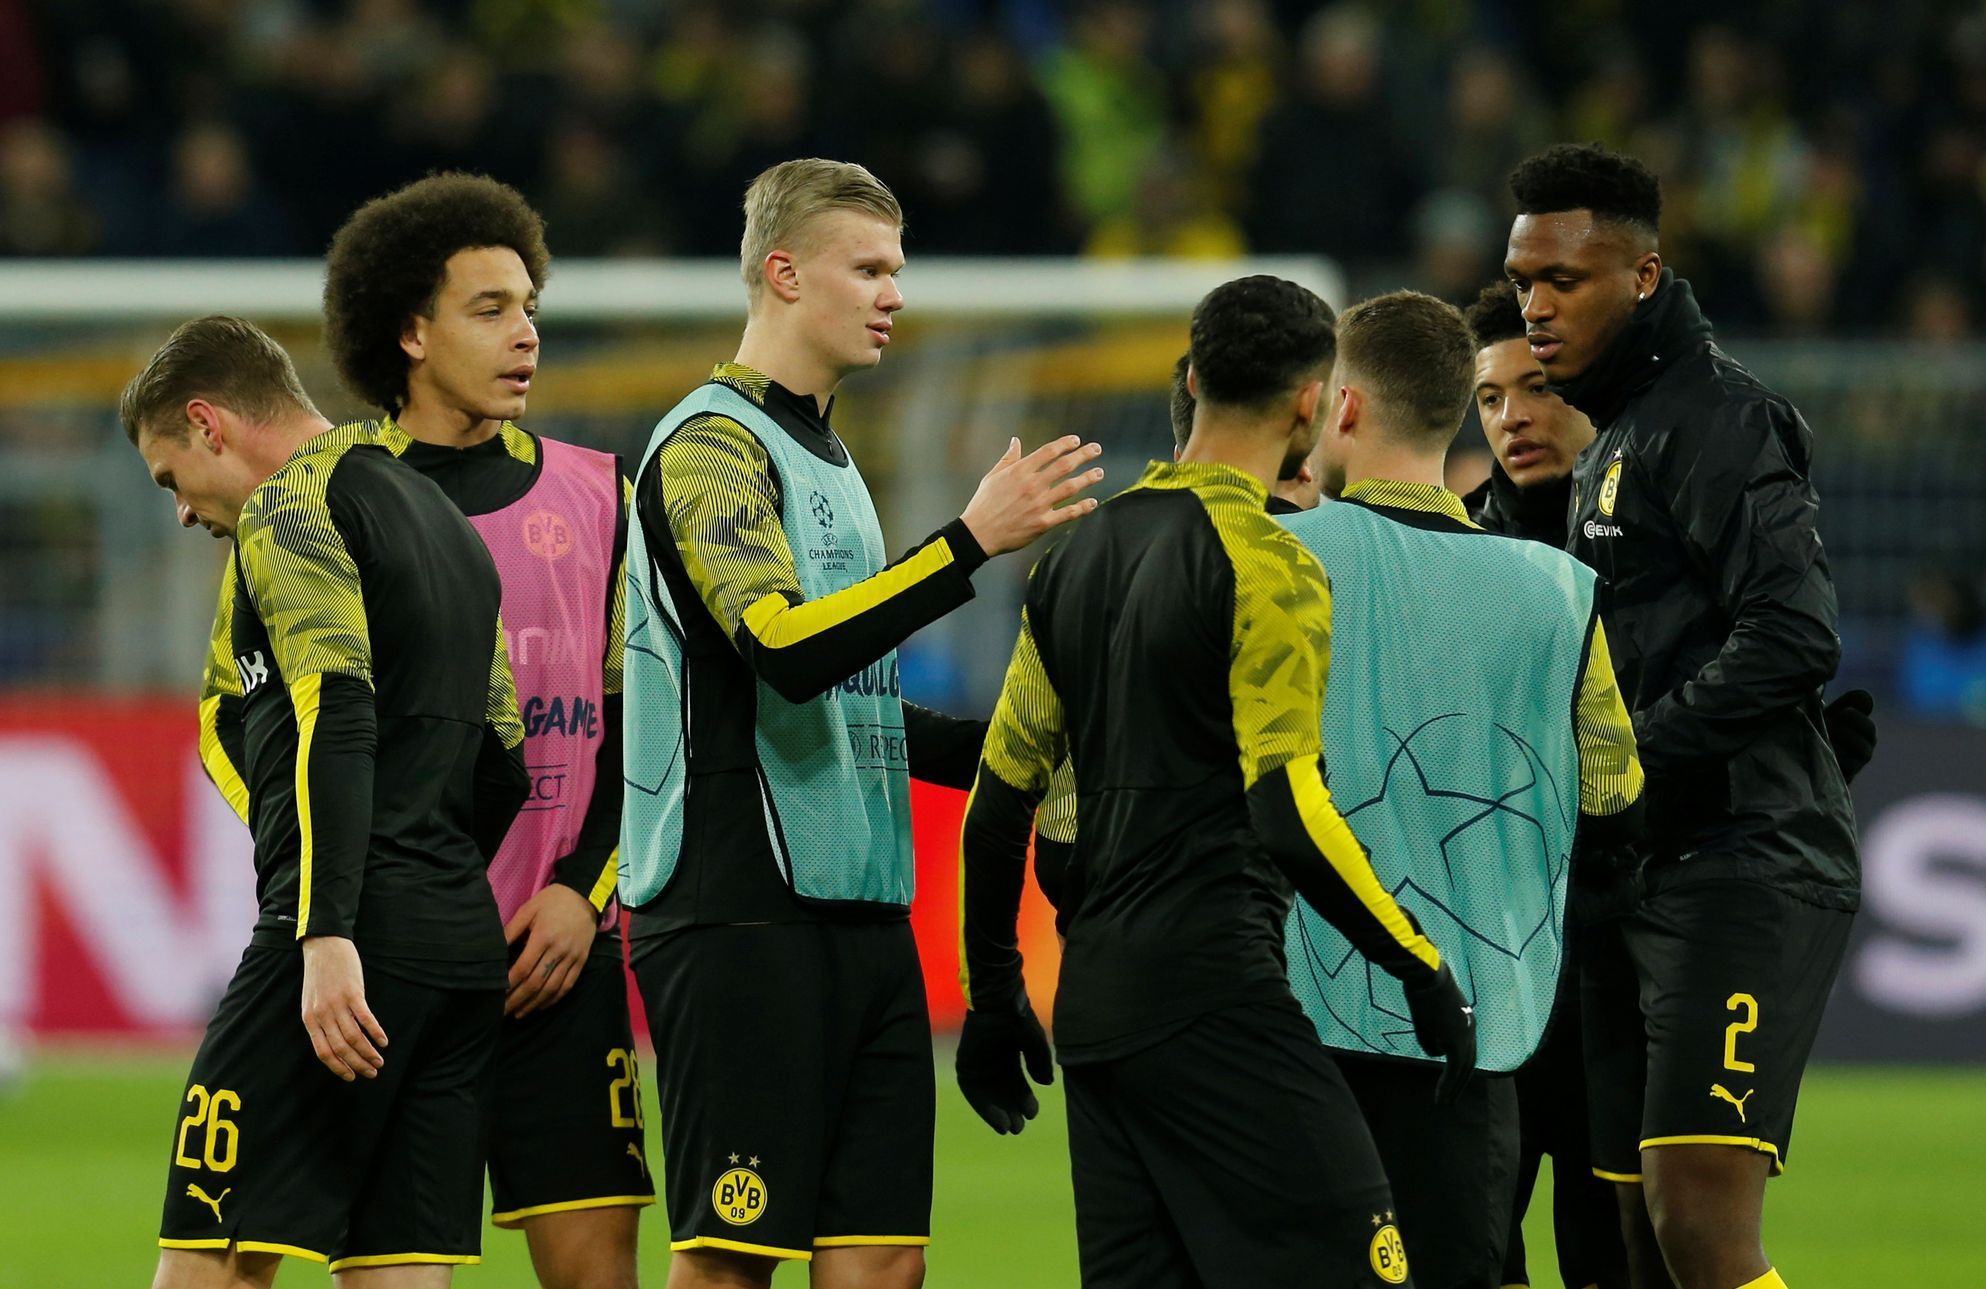 Osmifinále Ligy mistrů 2019/20, Dortmund - PSG: Erling Braut Haaland se rozcvičuje se spoluhráči